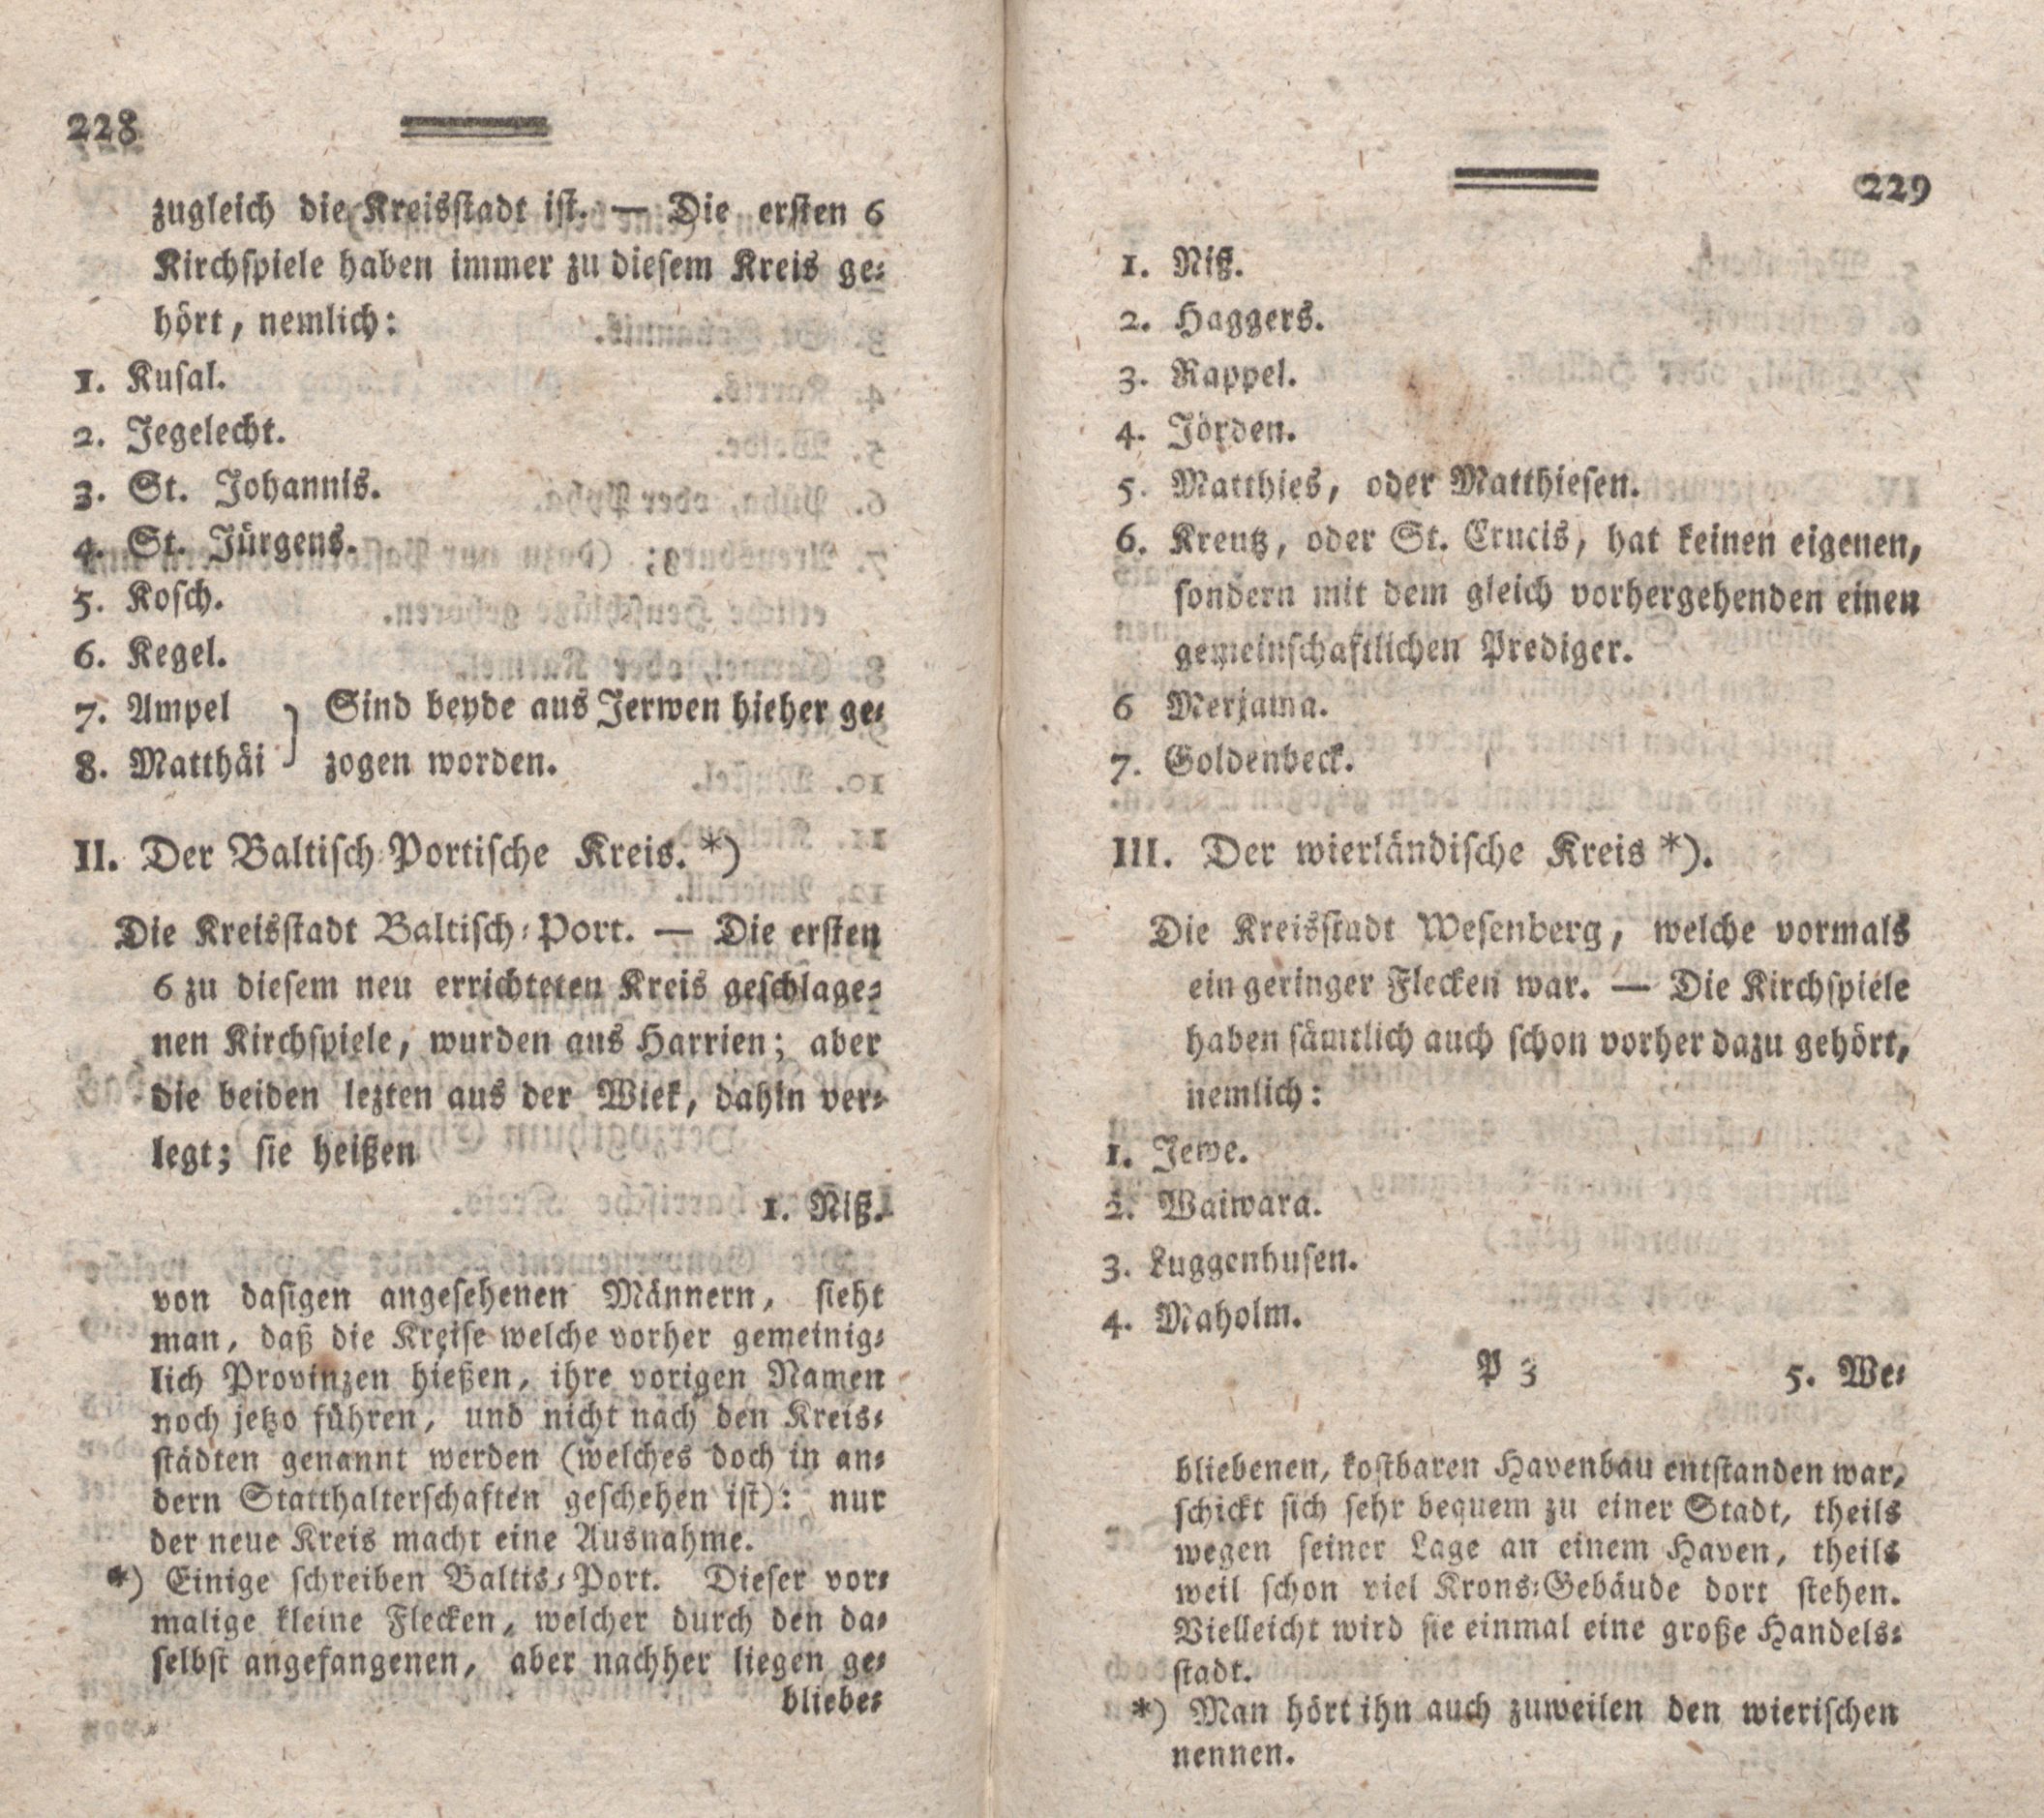 Nordische Miscellaneen [08] (1784) | 115. (228-229) Main body of text